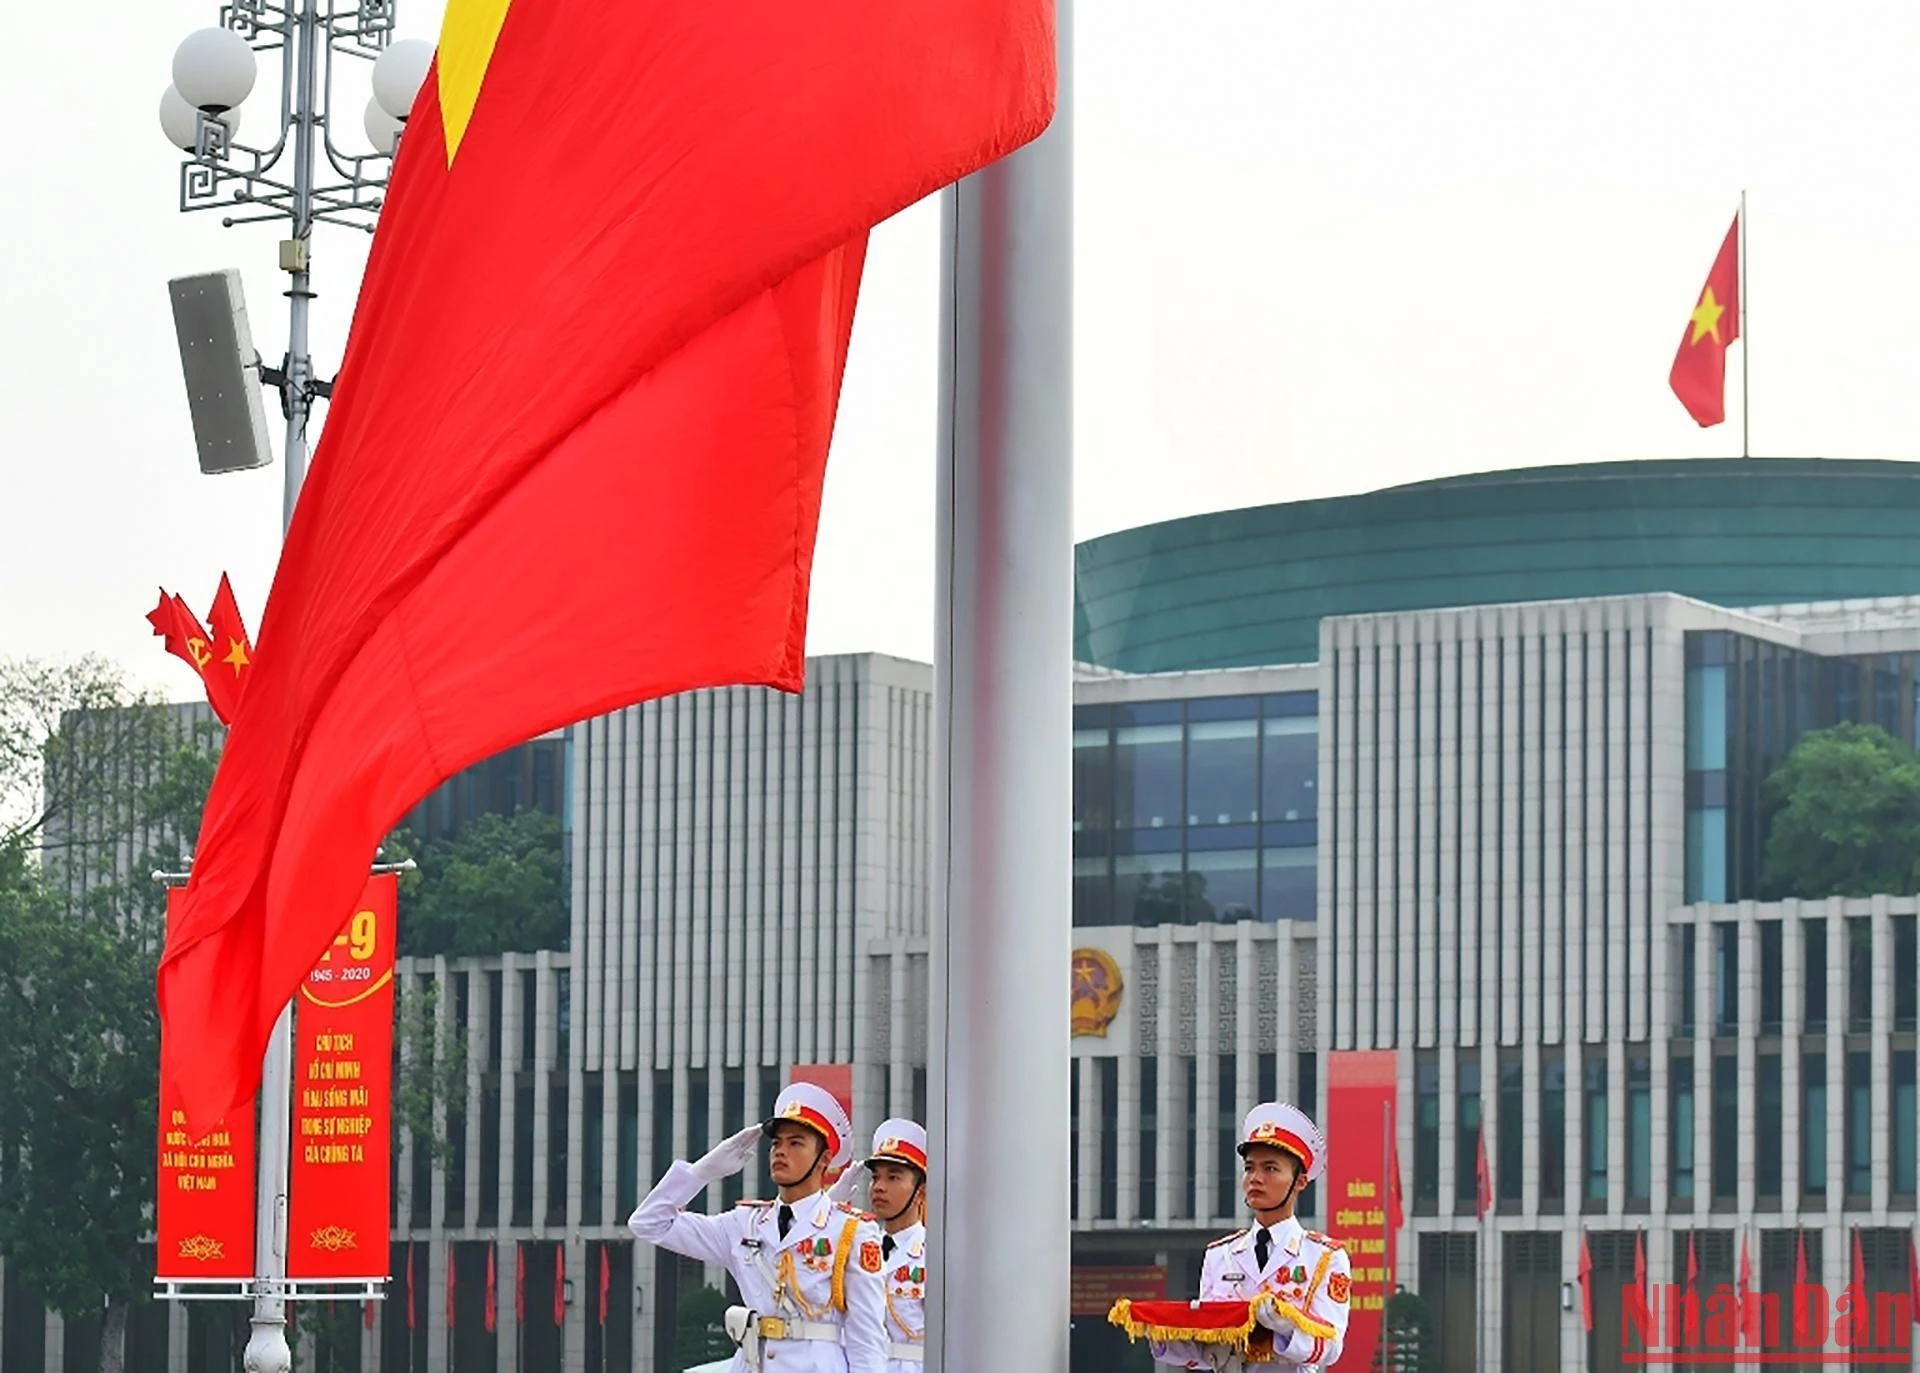 Cờ đỏ rực sao vàng – hình tượng linh nghiệm quan trọng của dân tộc bản địa nước Việt Nam hình ảnh 5